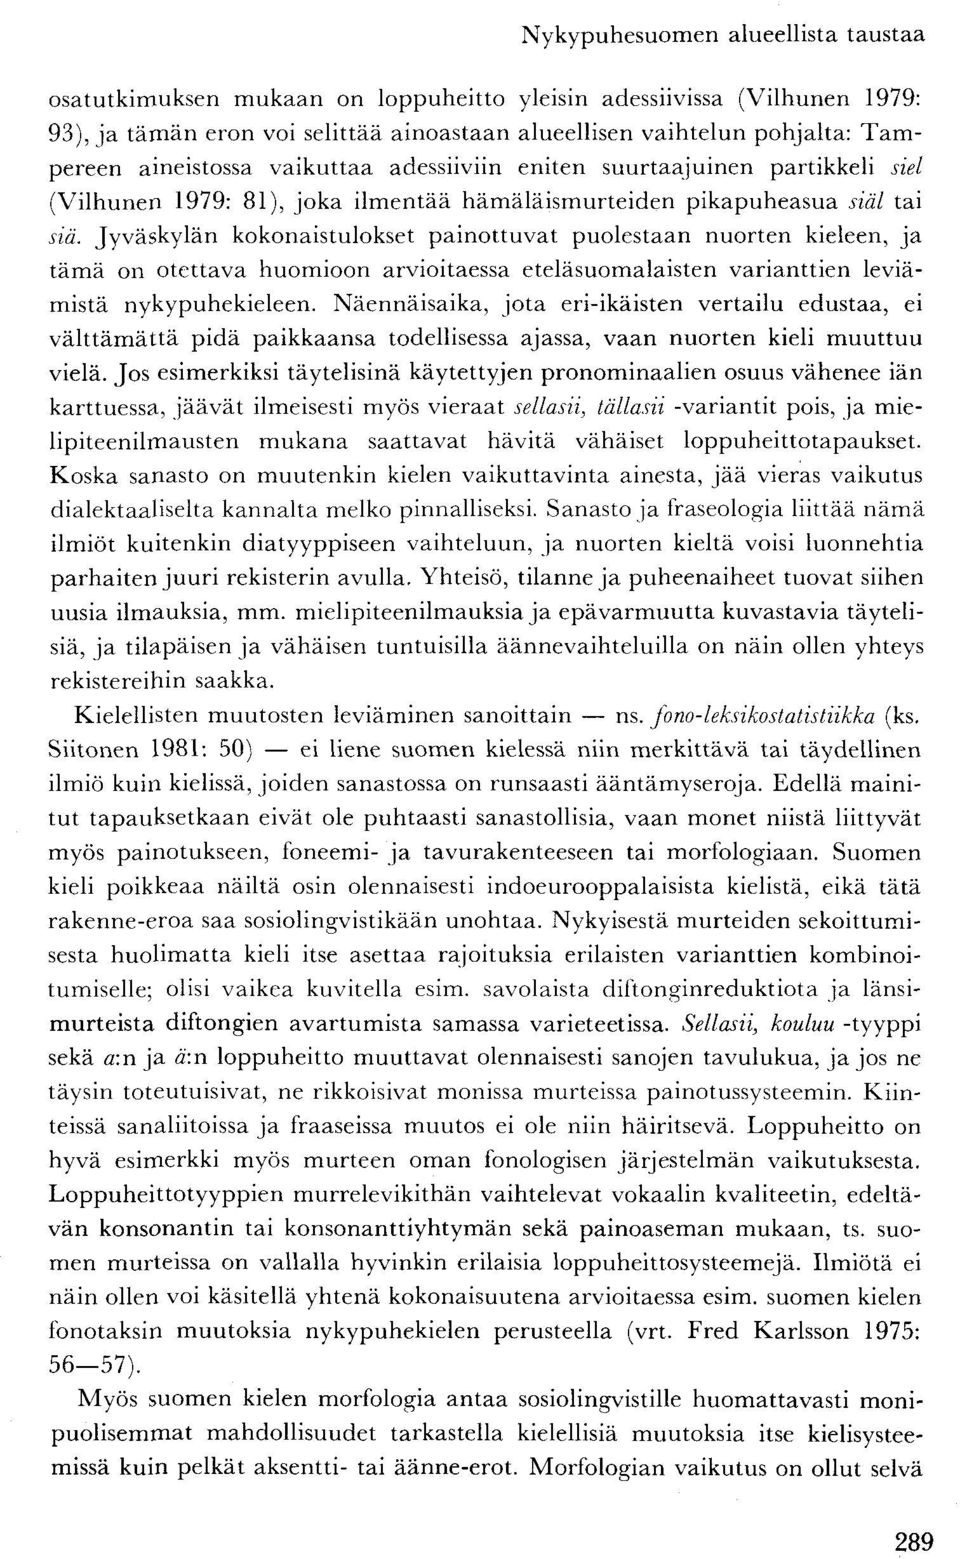 Jyväskylän kokonaistulokset painottuvat puolestaan nuorten kieleen, ja tämä on otettava huomioon arvioitaessa eteläsuomalaisten varianttien leviämistä nykypuhekieleen.